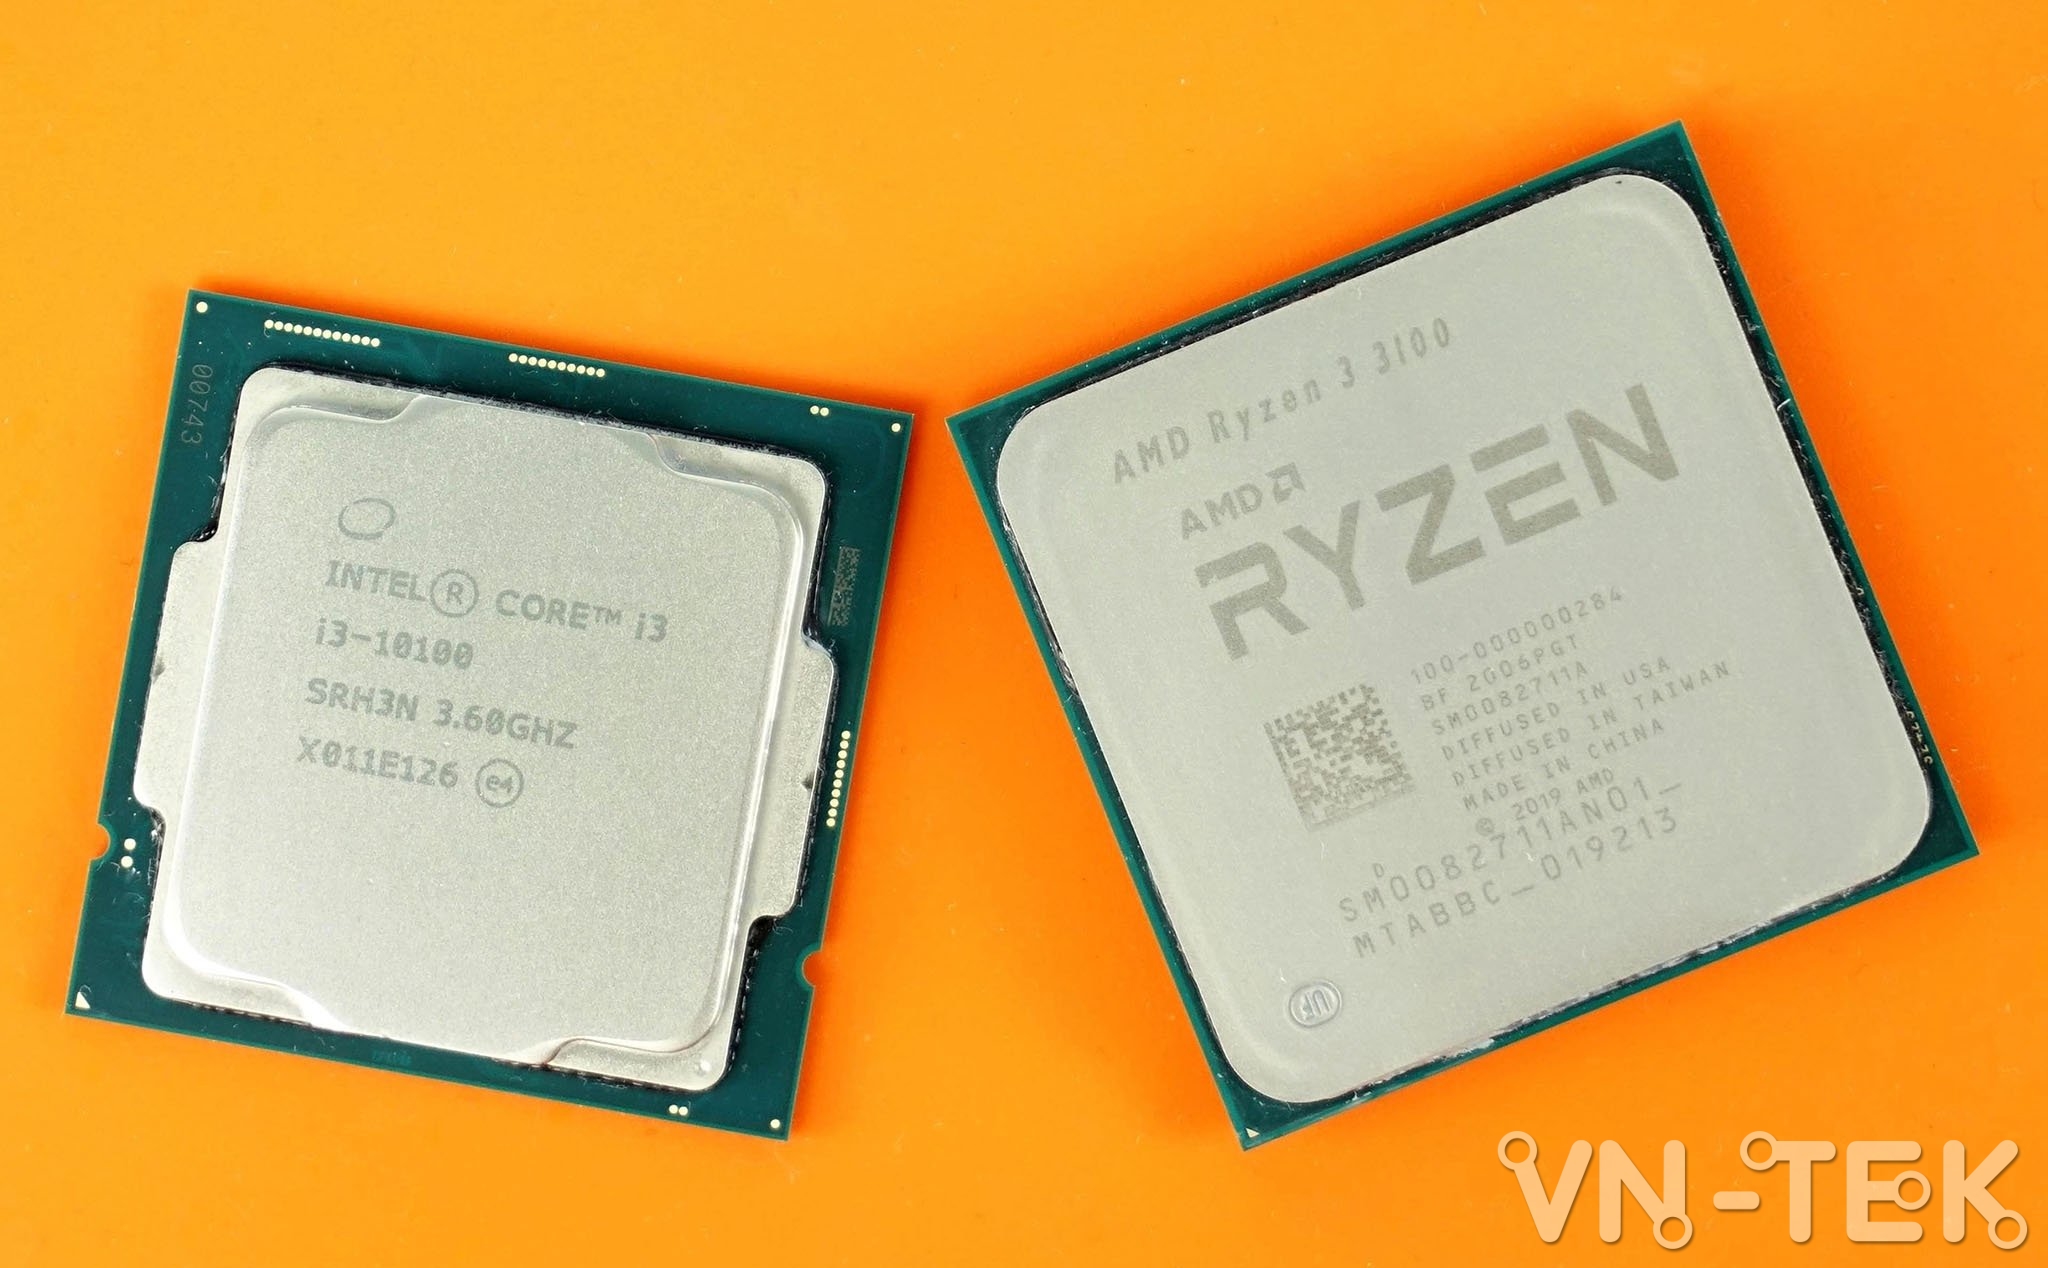 chon chip intel hay amd - AMD hay Intel cho PC Gaming - Đâu là giải pháp tối ưu ?